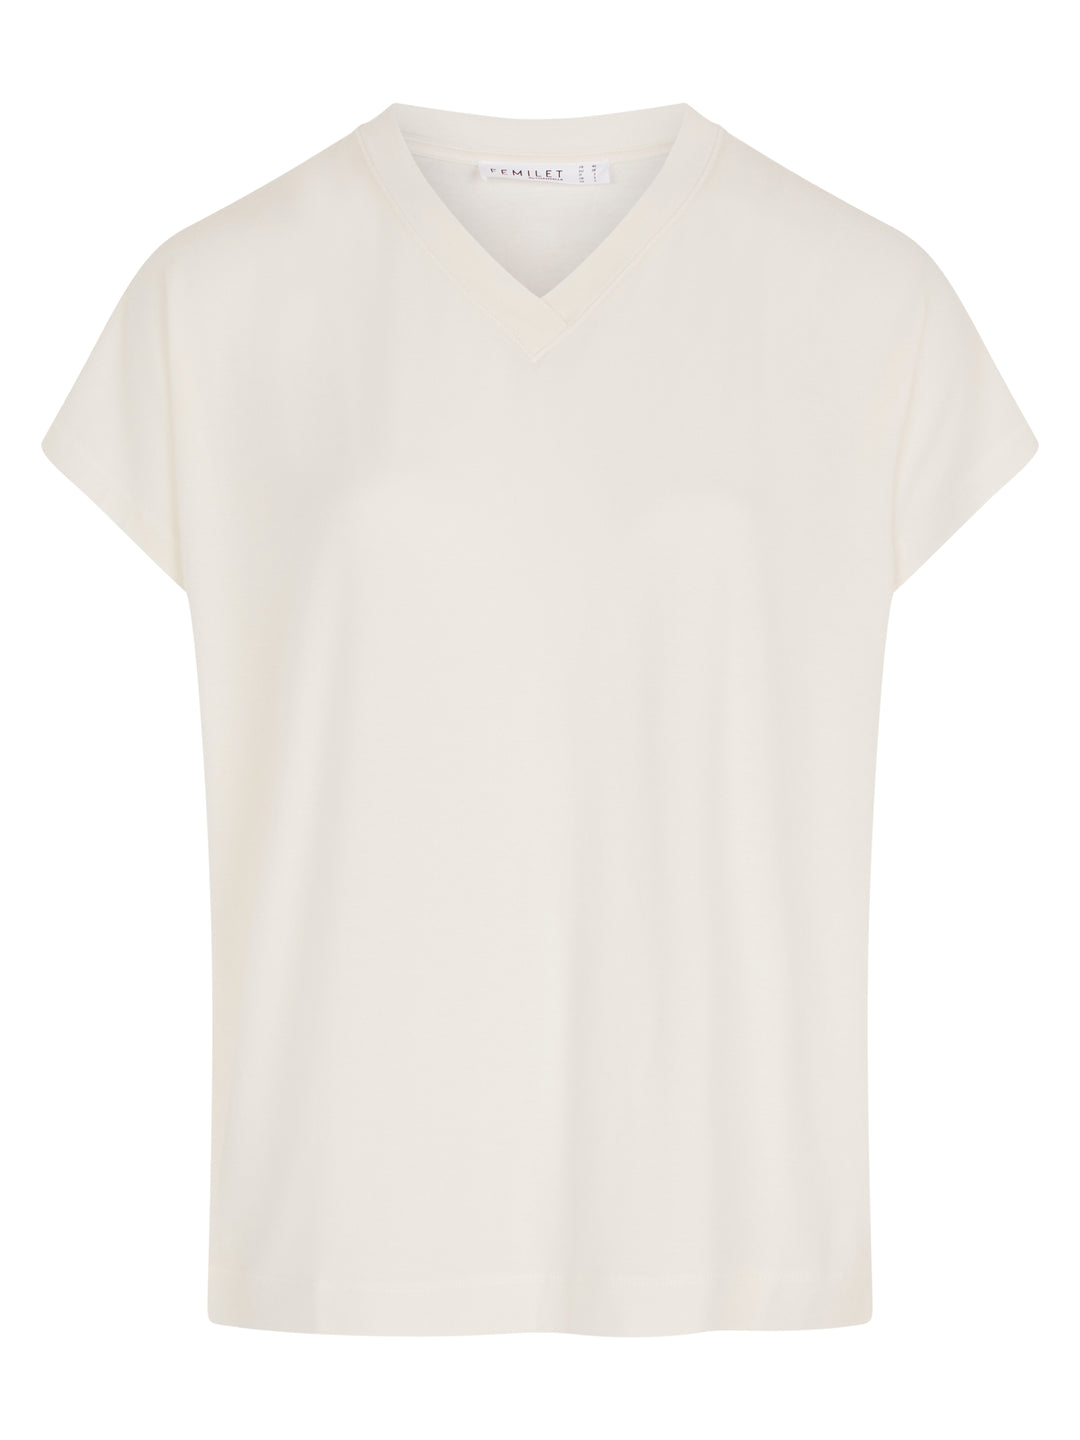 Femilet - Kate T-Shirt mit kurzen Ärmeln Elfenbein